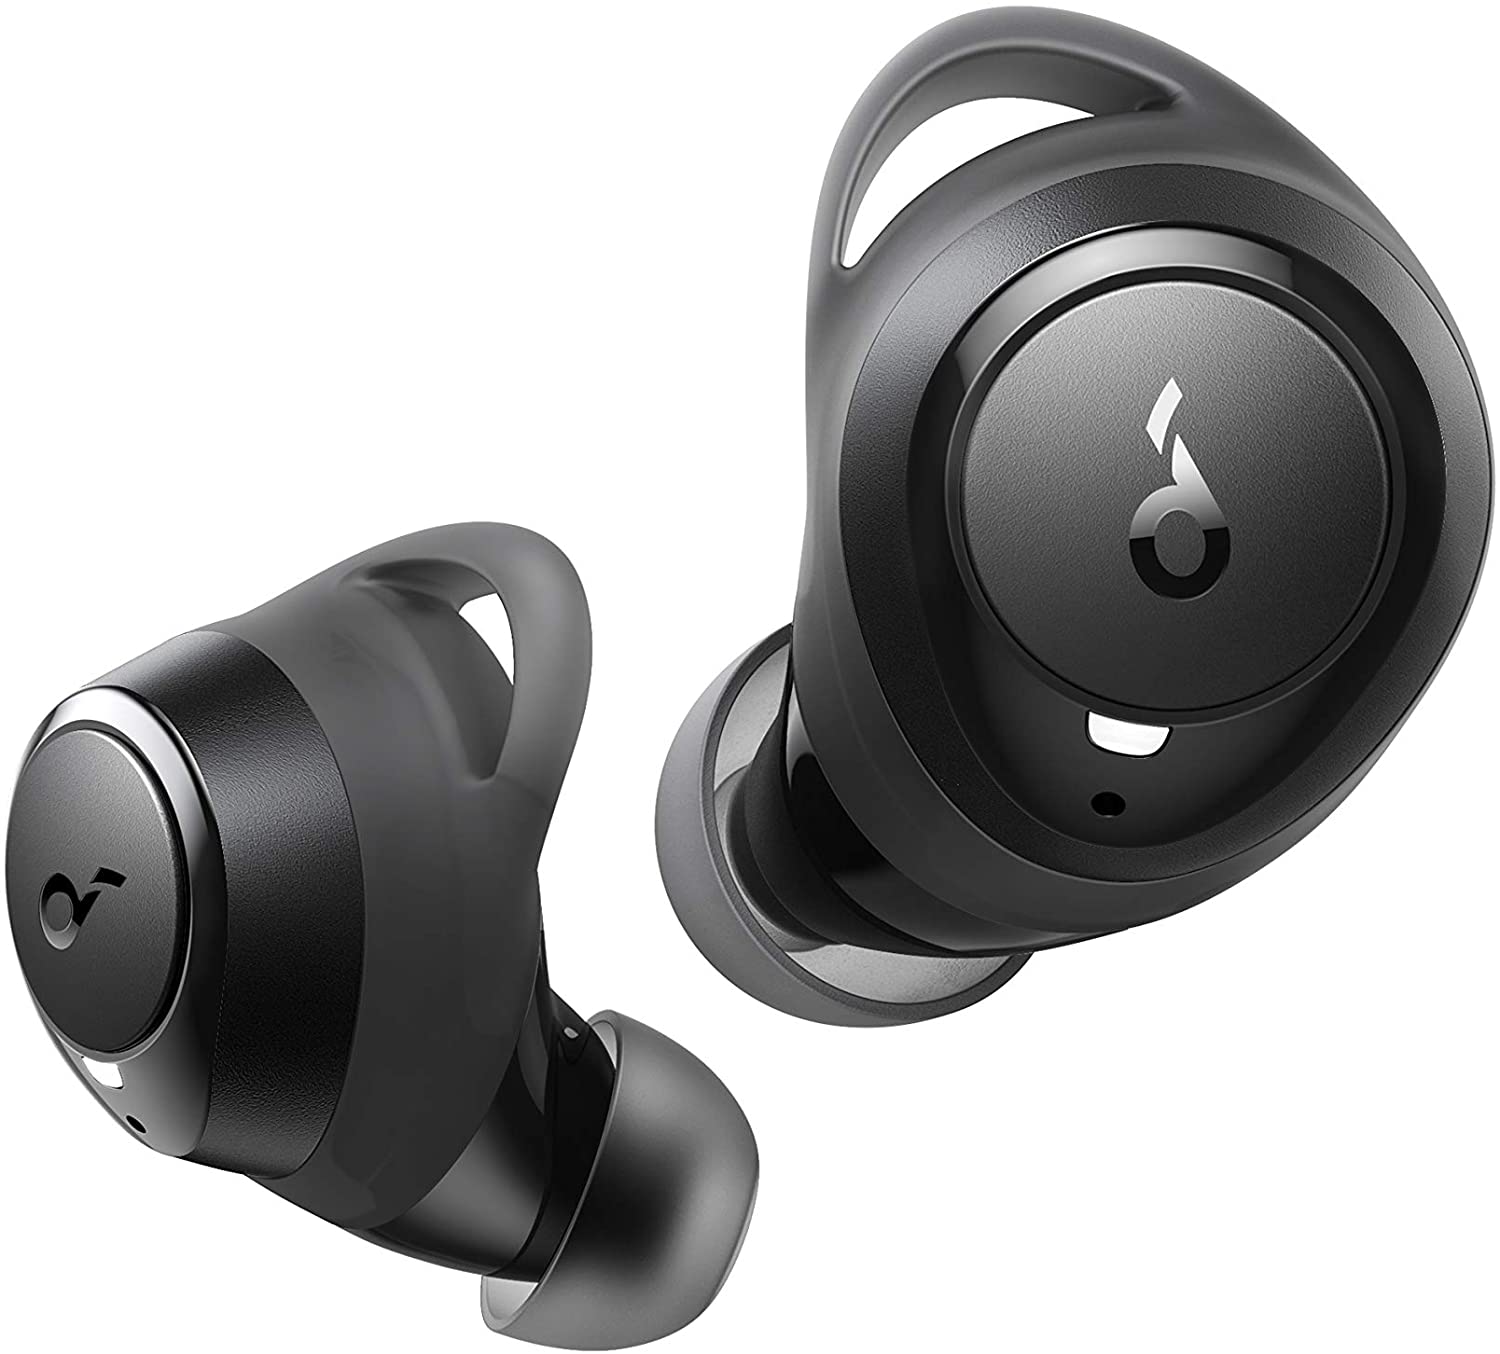 Unos auriculares Bluetooth baratos para running o crossfit: estos